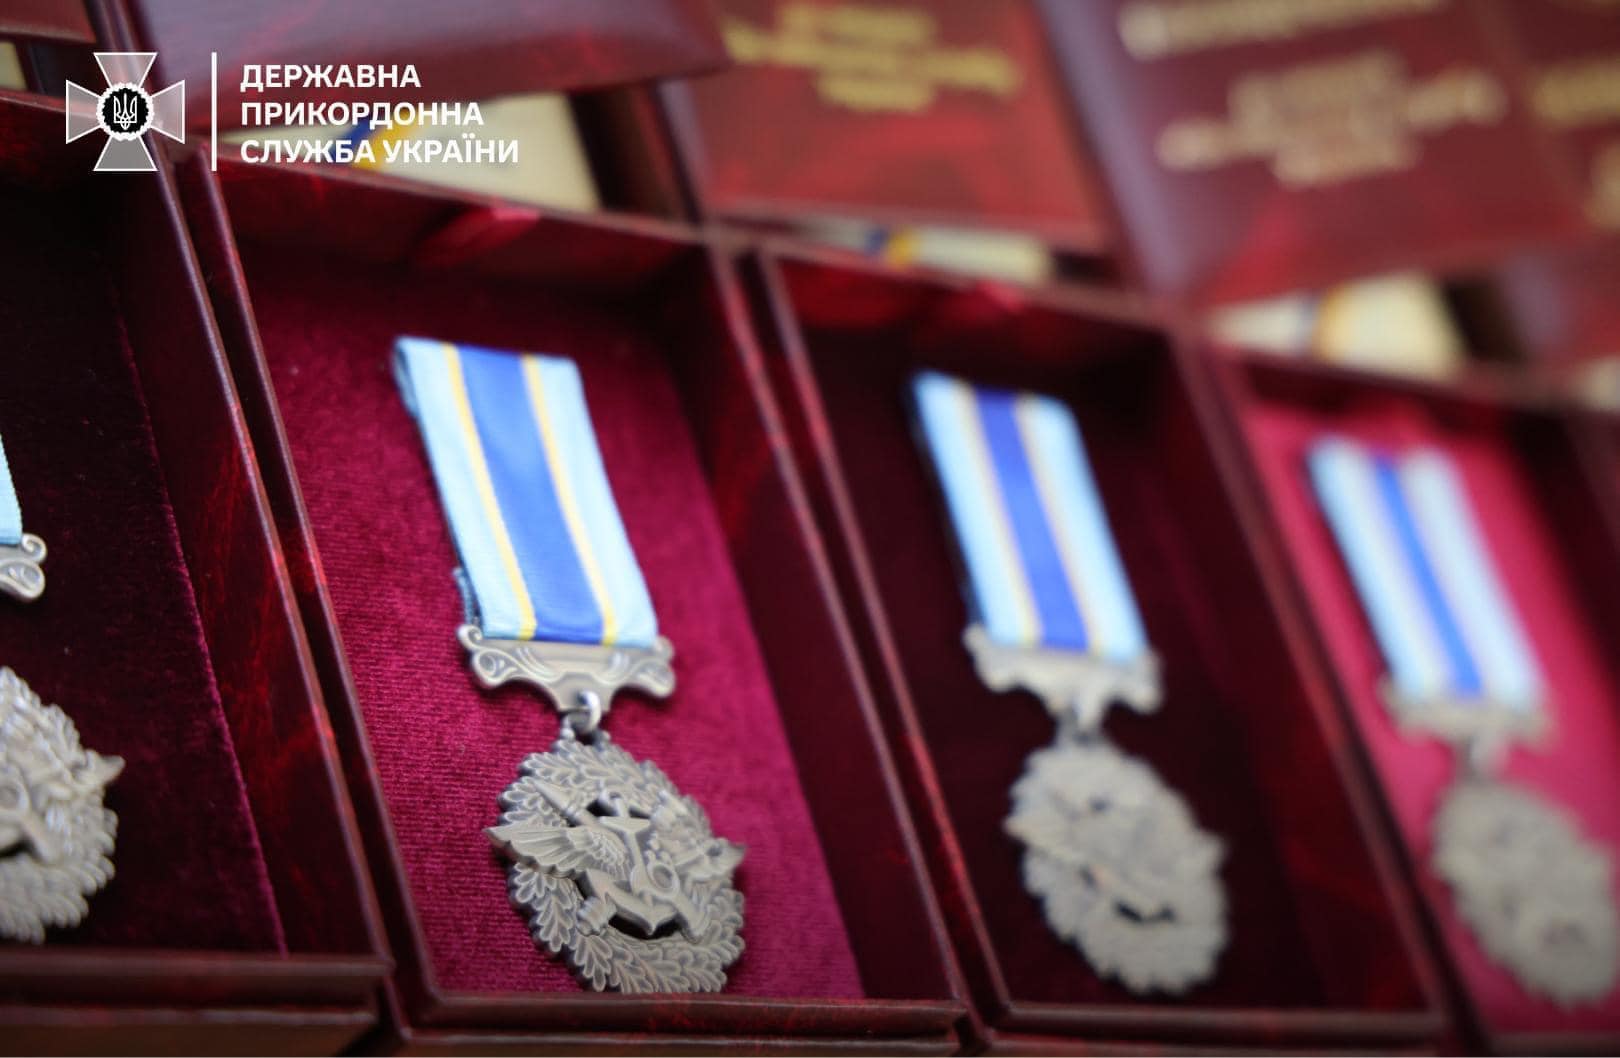 Прикордонники Краматорського загону отримали державні та відомчі нагороди